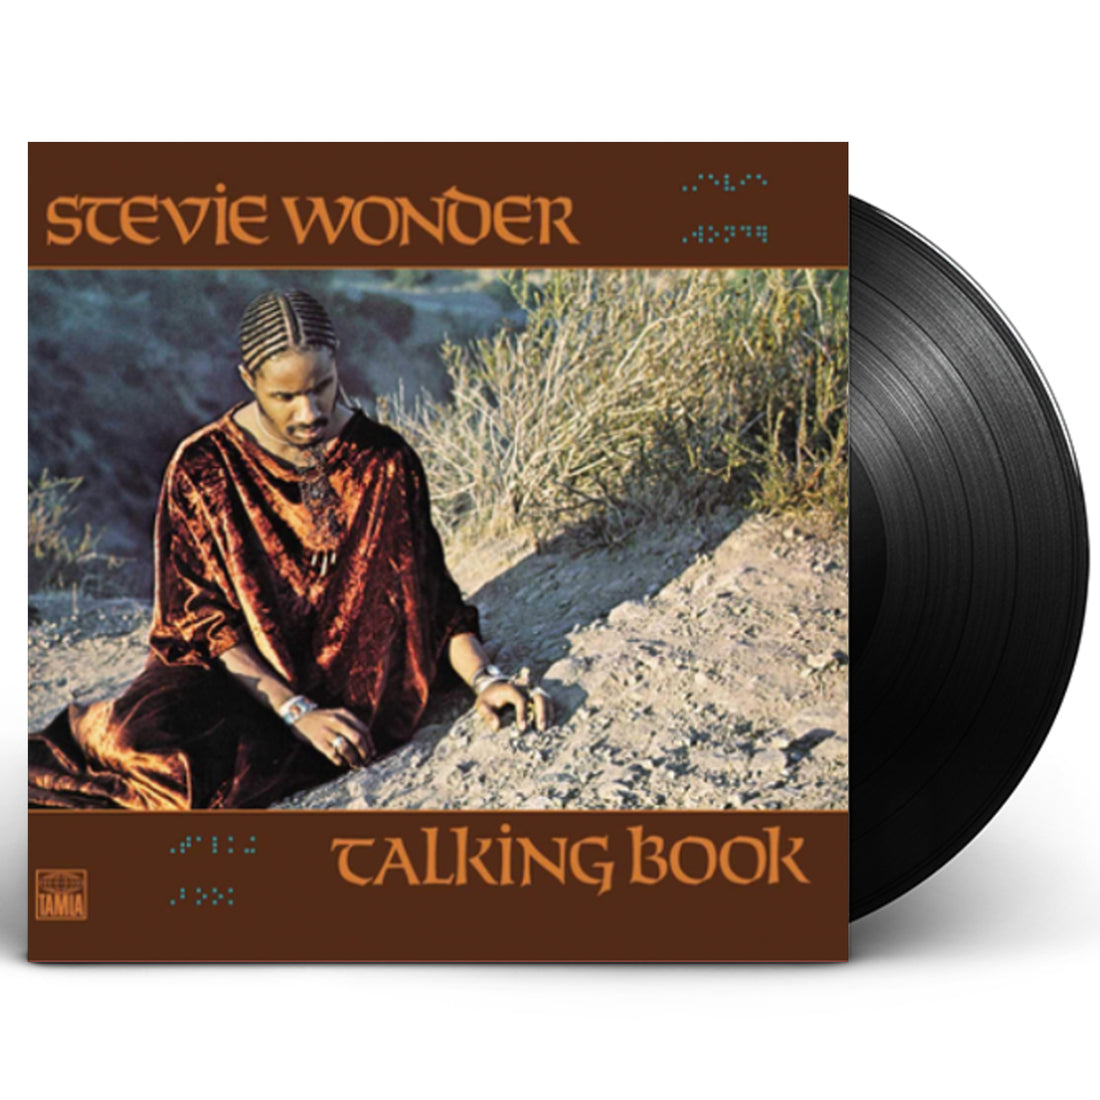 Stevie Wonder "Talking Book" LP Vinyl